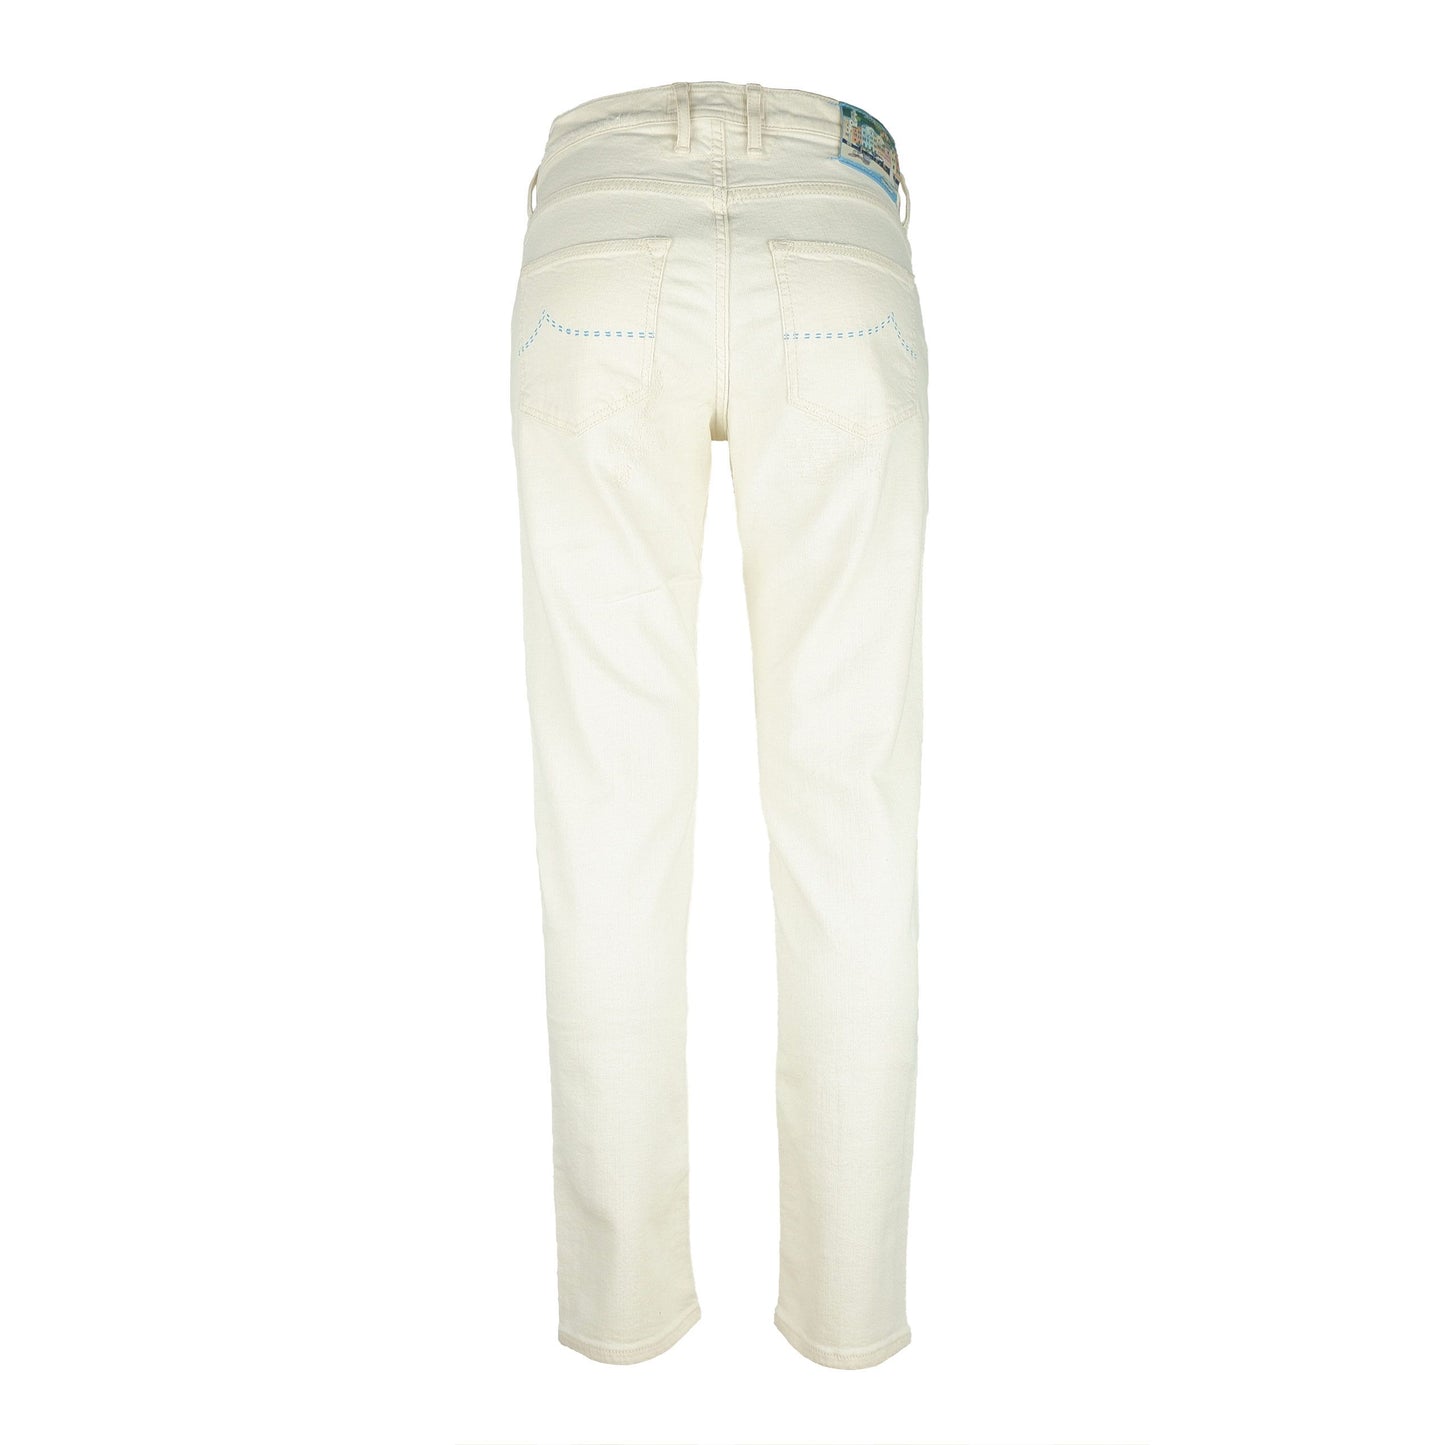 Elegant White Stretch Denim Jeans